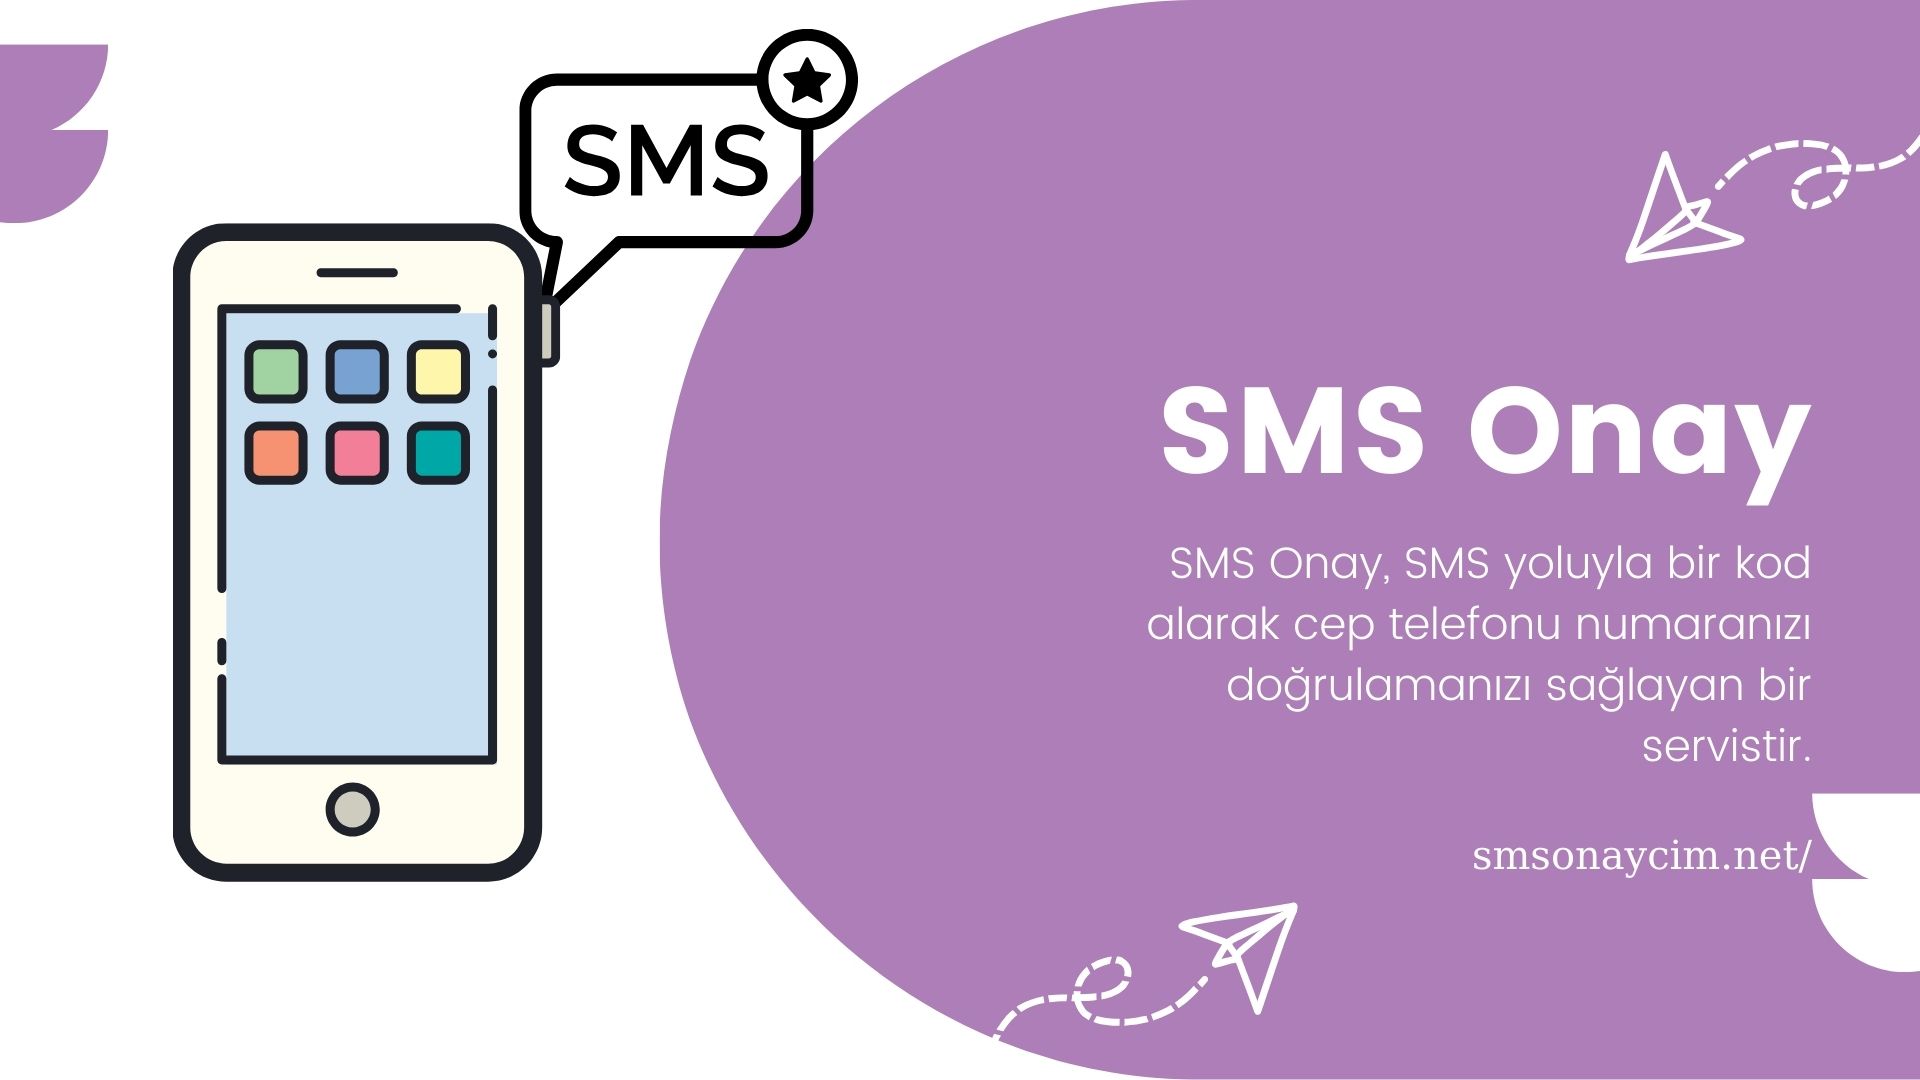 SMS Onayı: Güvenliğinizi Sağlamanın Kolay Yolu